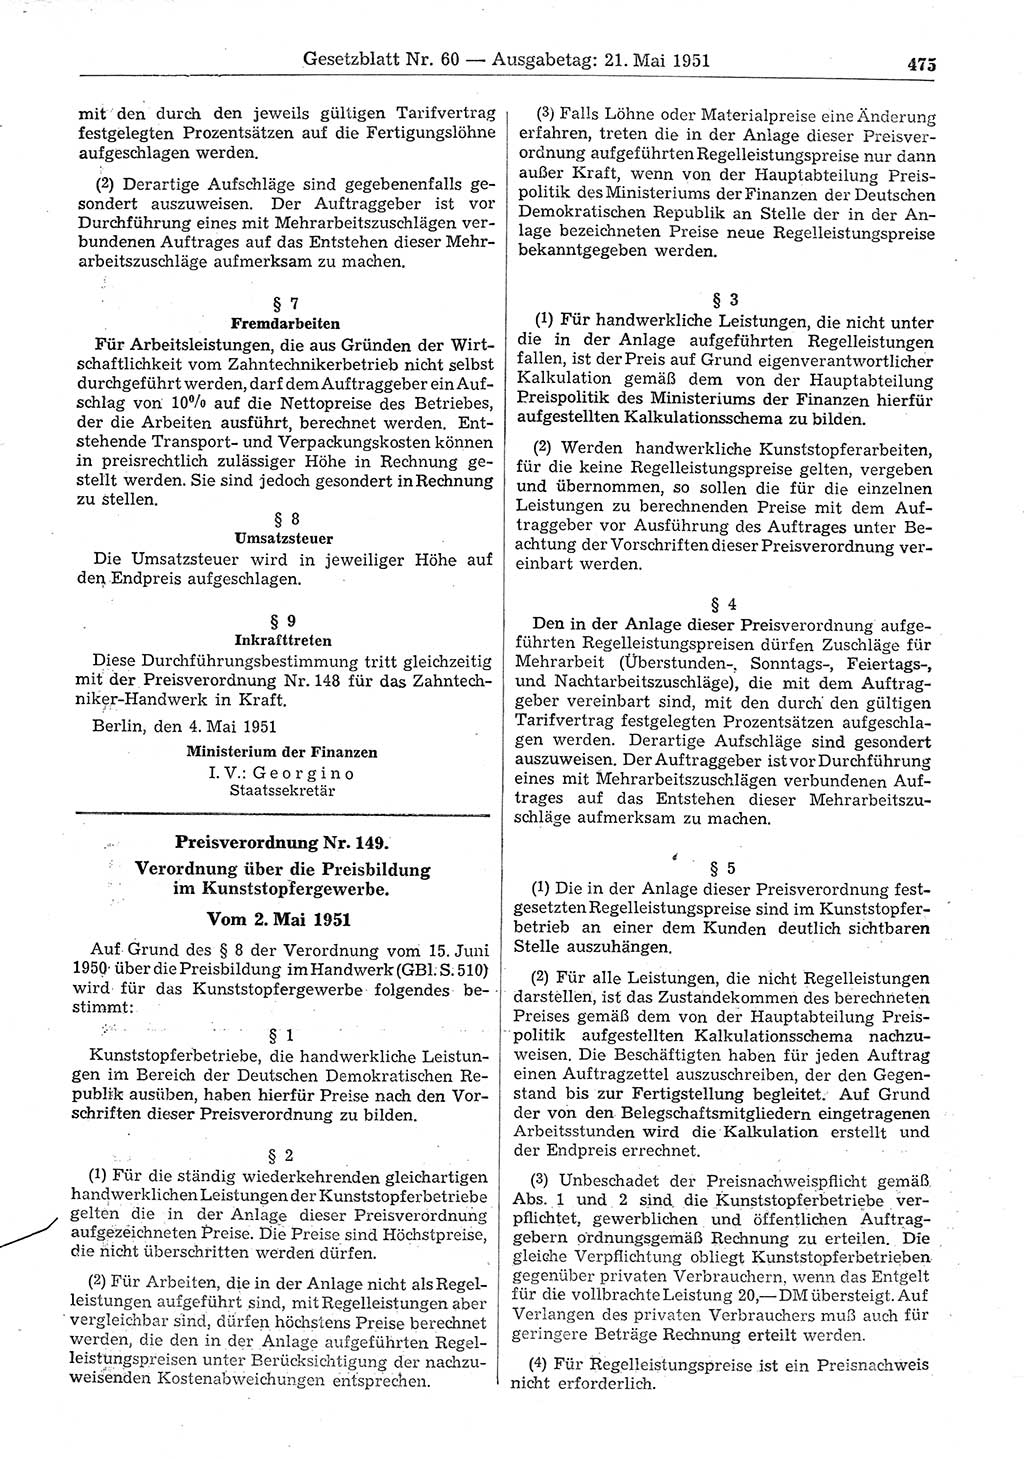 Gesetzblatt (GBl.) der Deutschen Demokratischen Republik (DDR) 1951, Seite 475 (GBl. DDR 1951, S. 475)